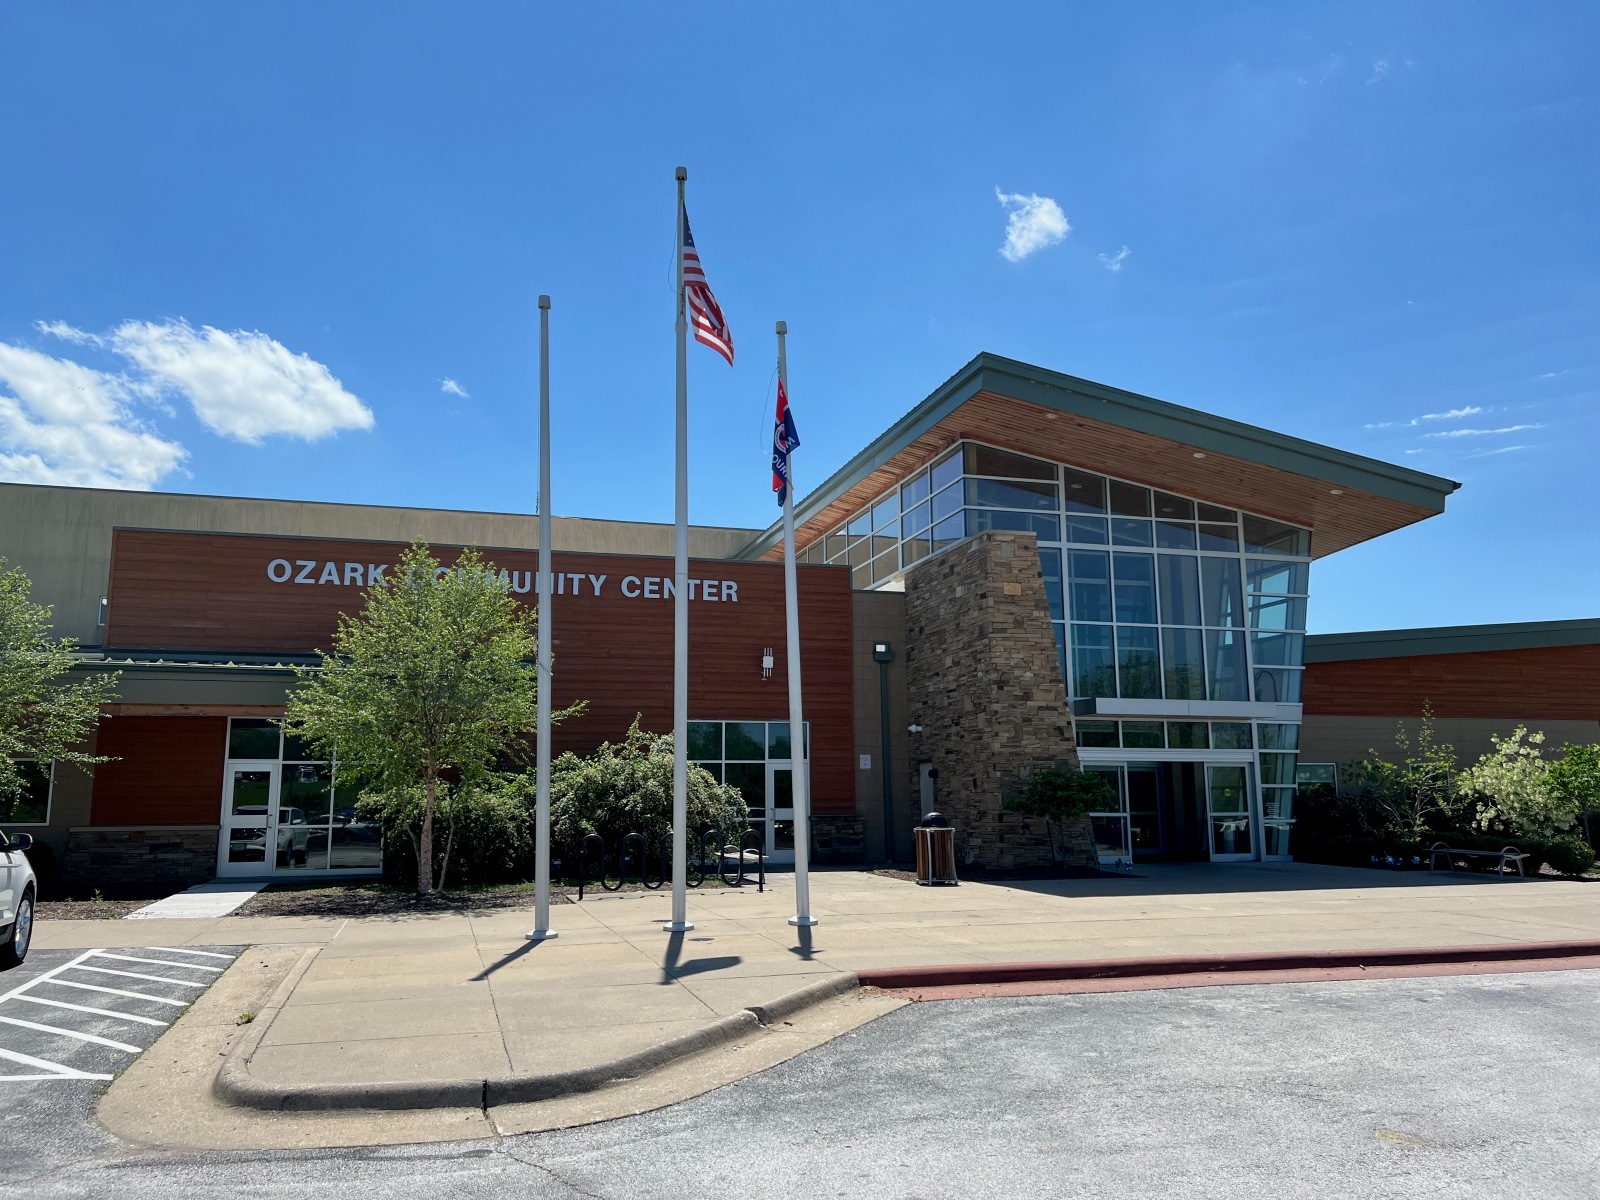 Ozark Community Center exterior